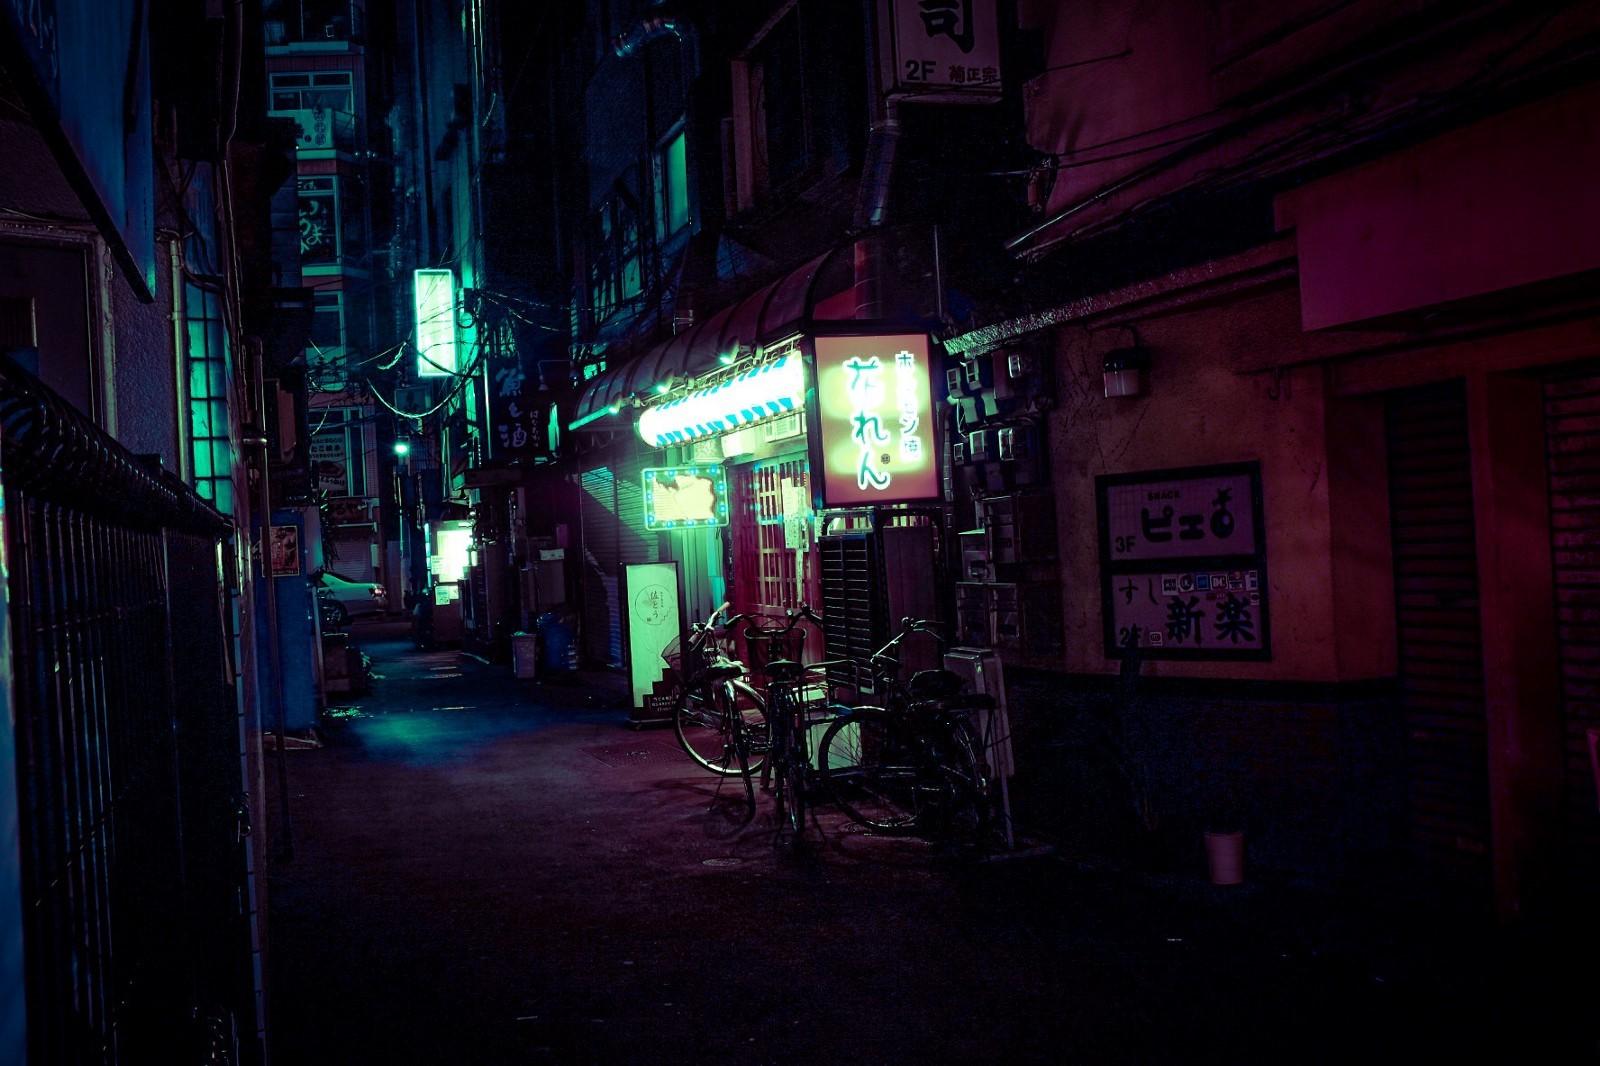 Tokyo Neon Lights Wallpapers - Top Free Tokyo Neon Lights Backgrounds ...